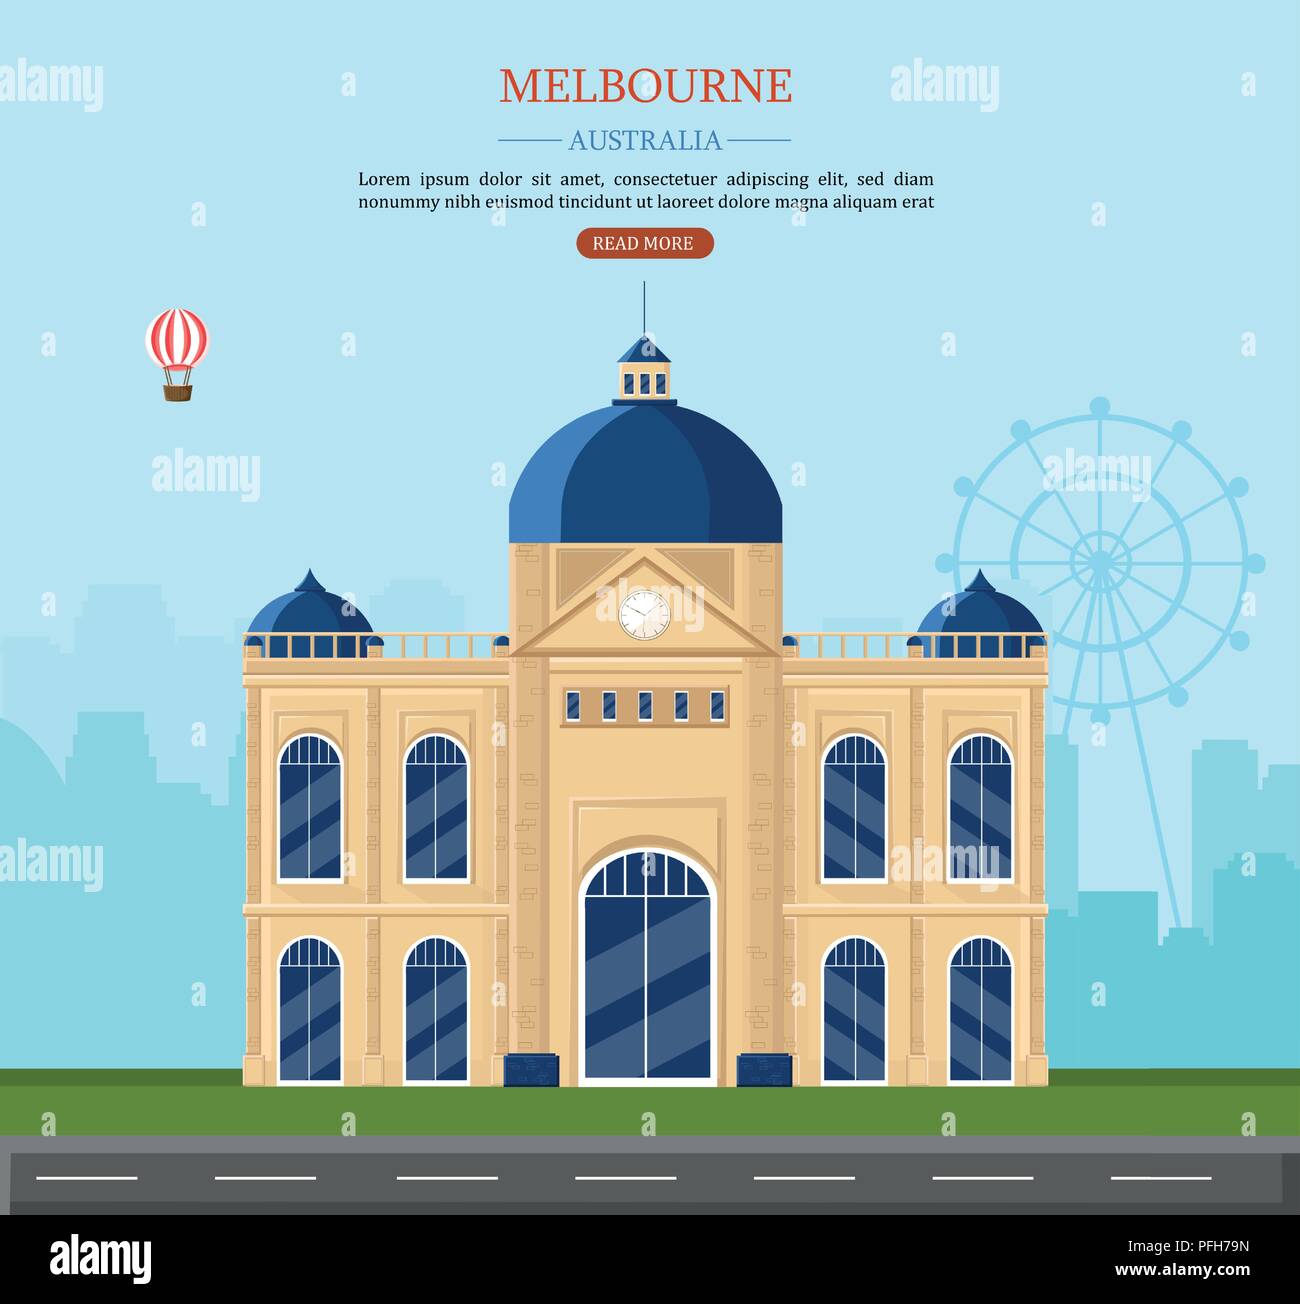 Melbourne landmarks in Australia Stock Vector